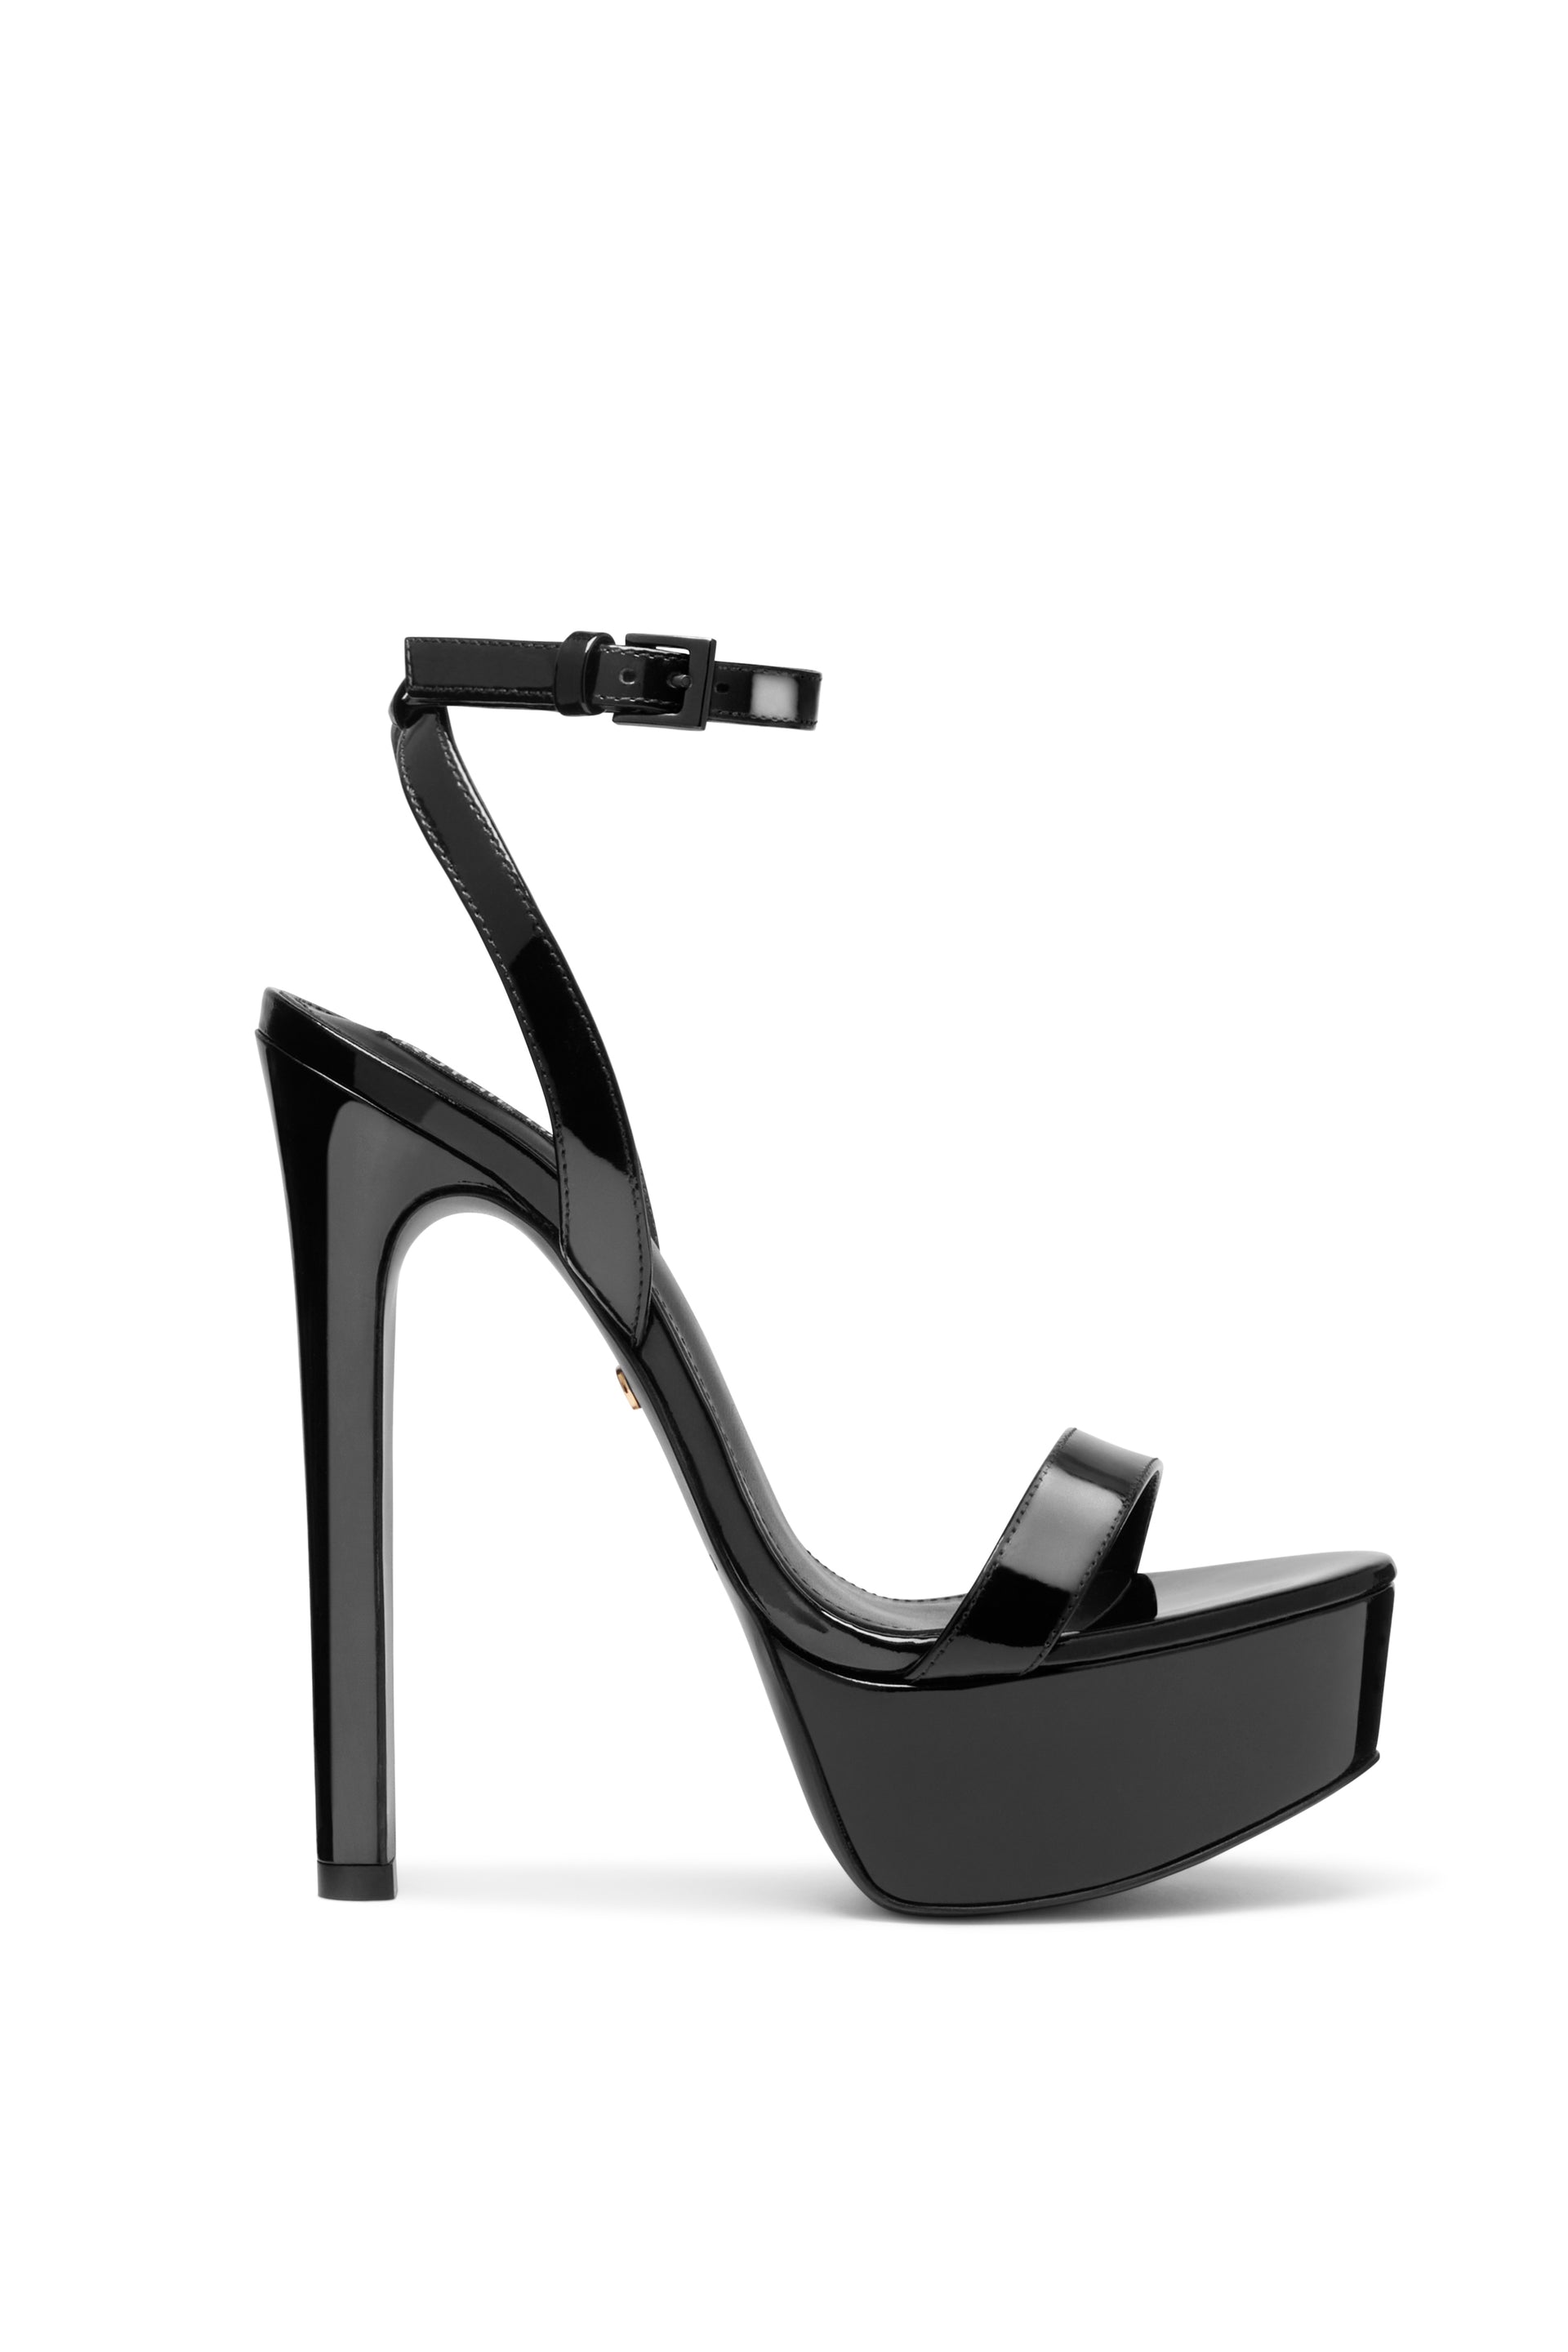 Ruthie Davis® — Shop Women's Luxury High Fashion High Heels.